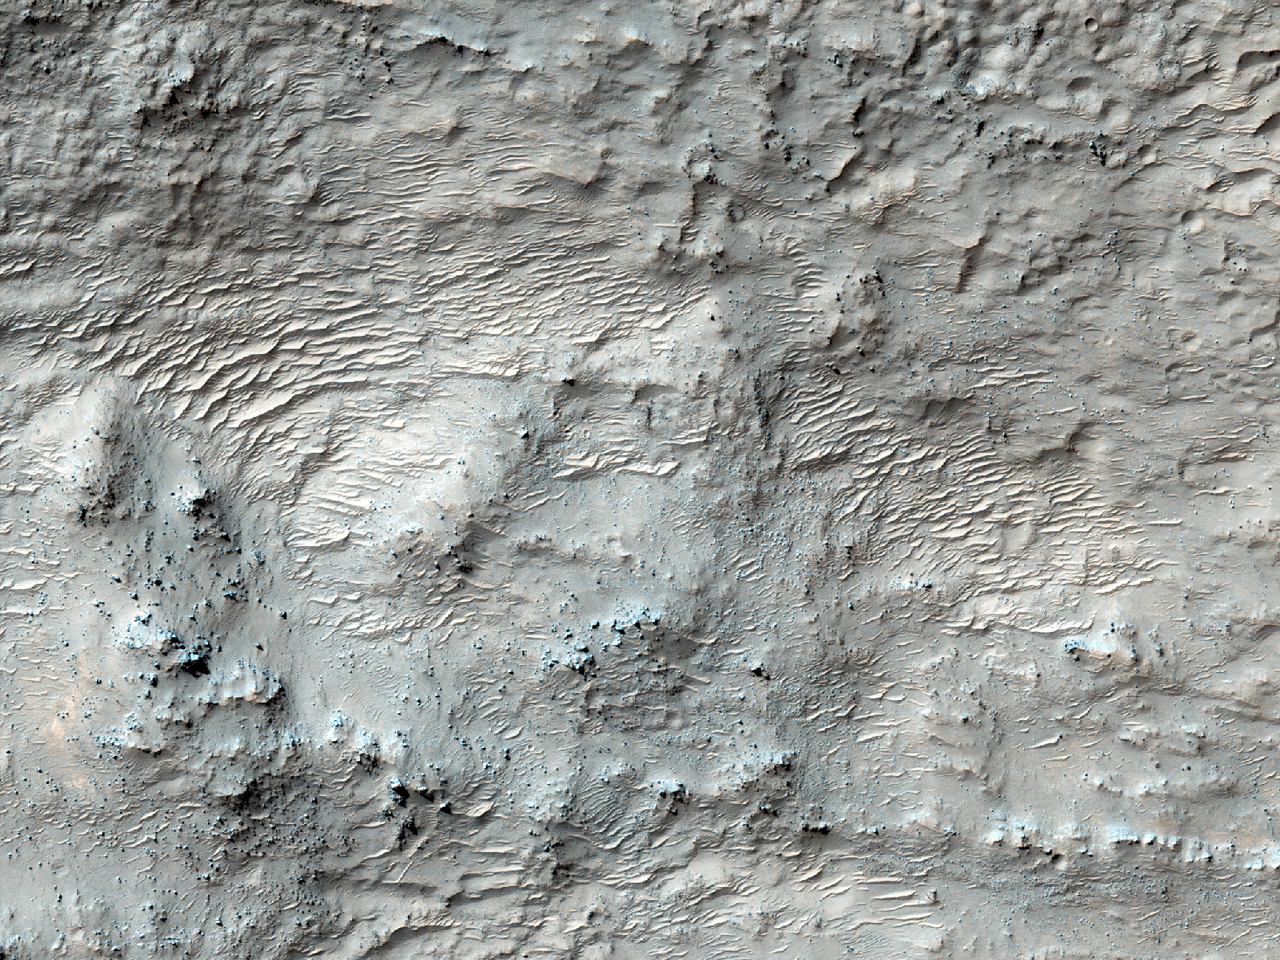 可能的水合氧化硅轴承材料在赫拉斯盆地 (Hellas Planitia)